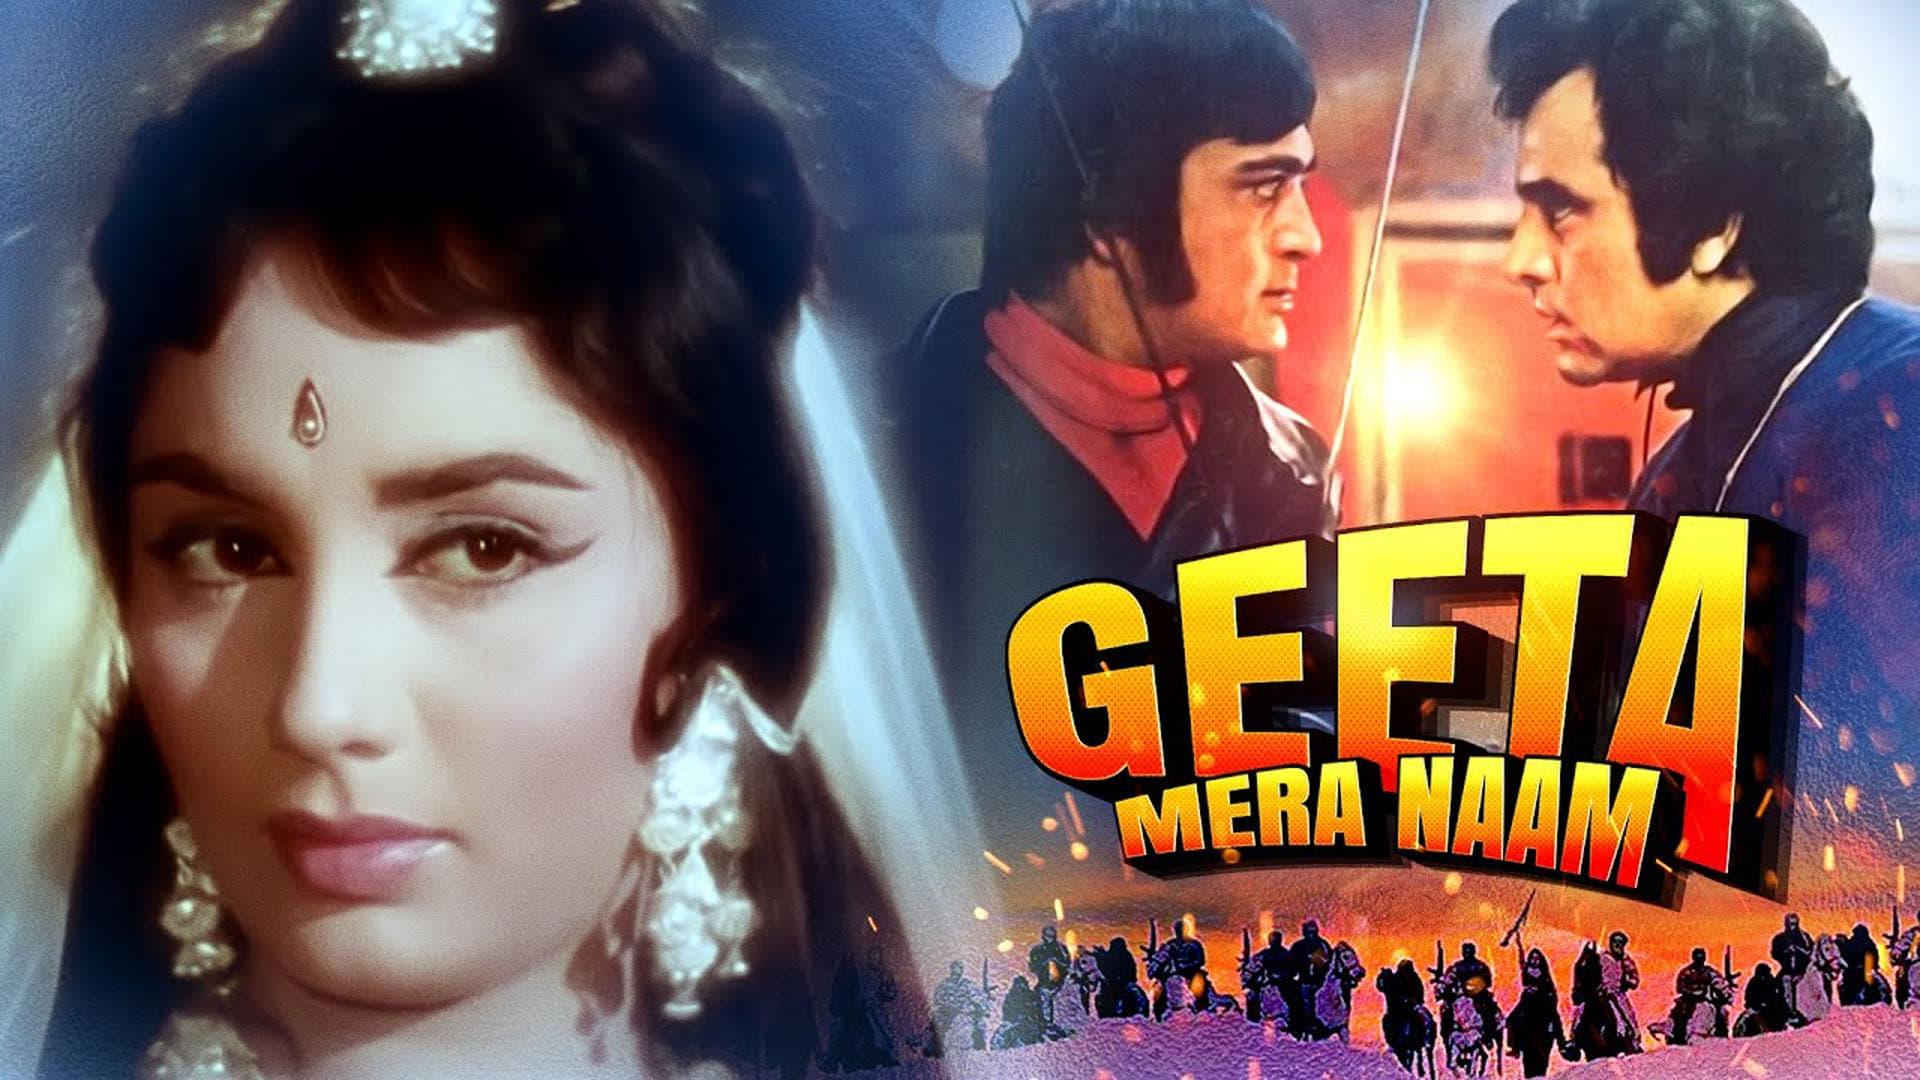 Geetaa Mera Naam backdrop